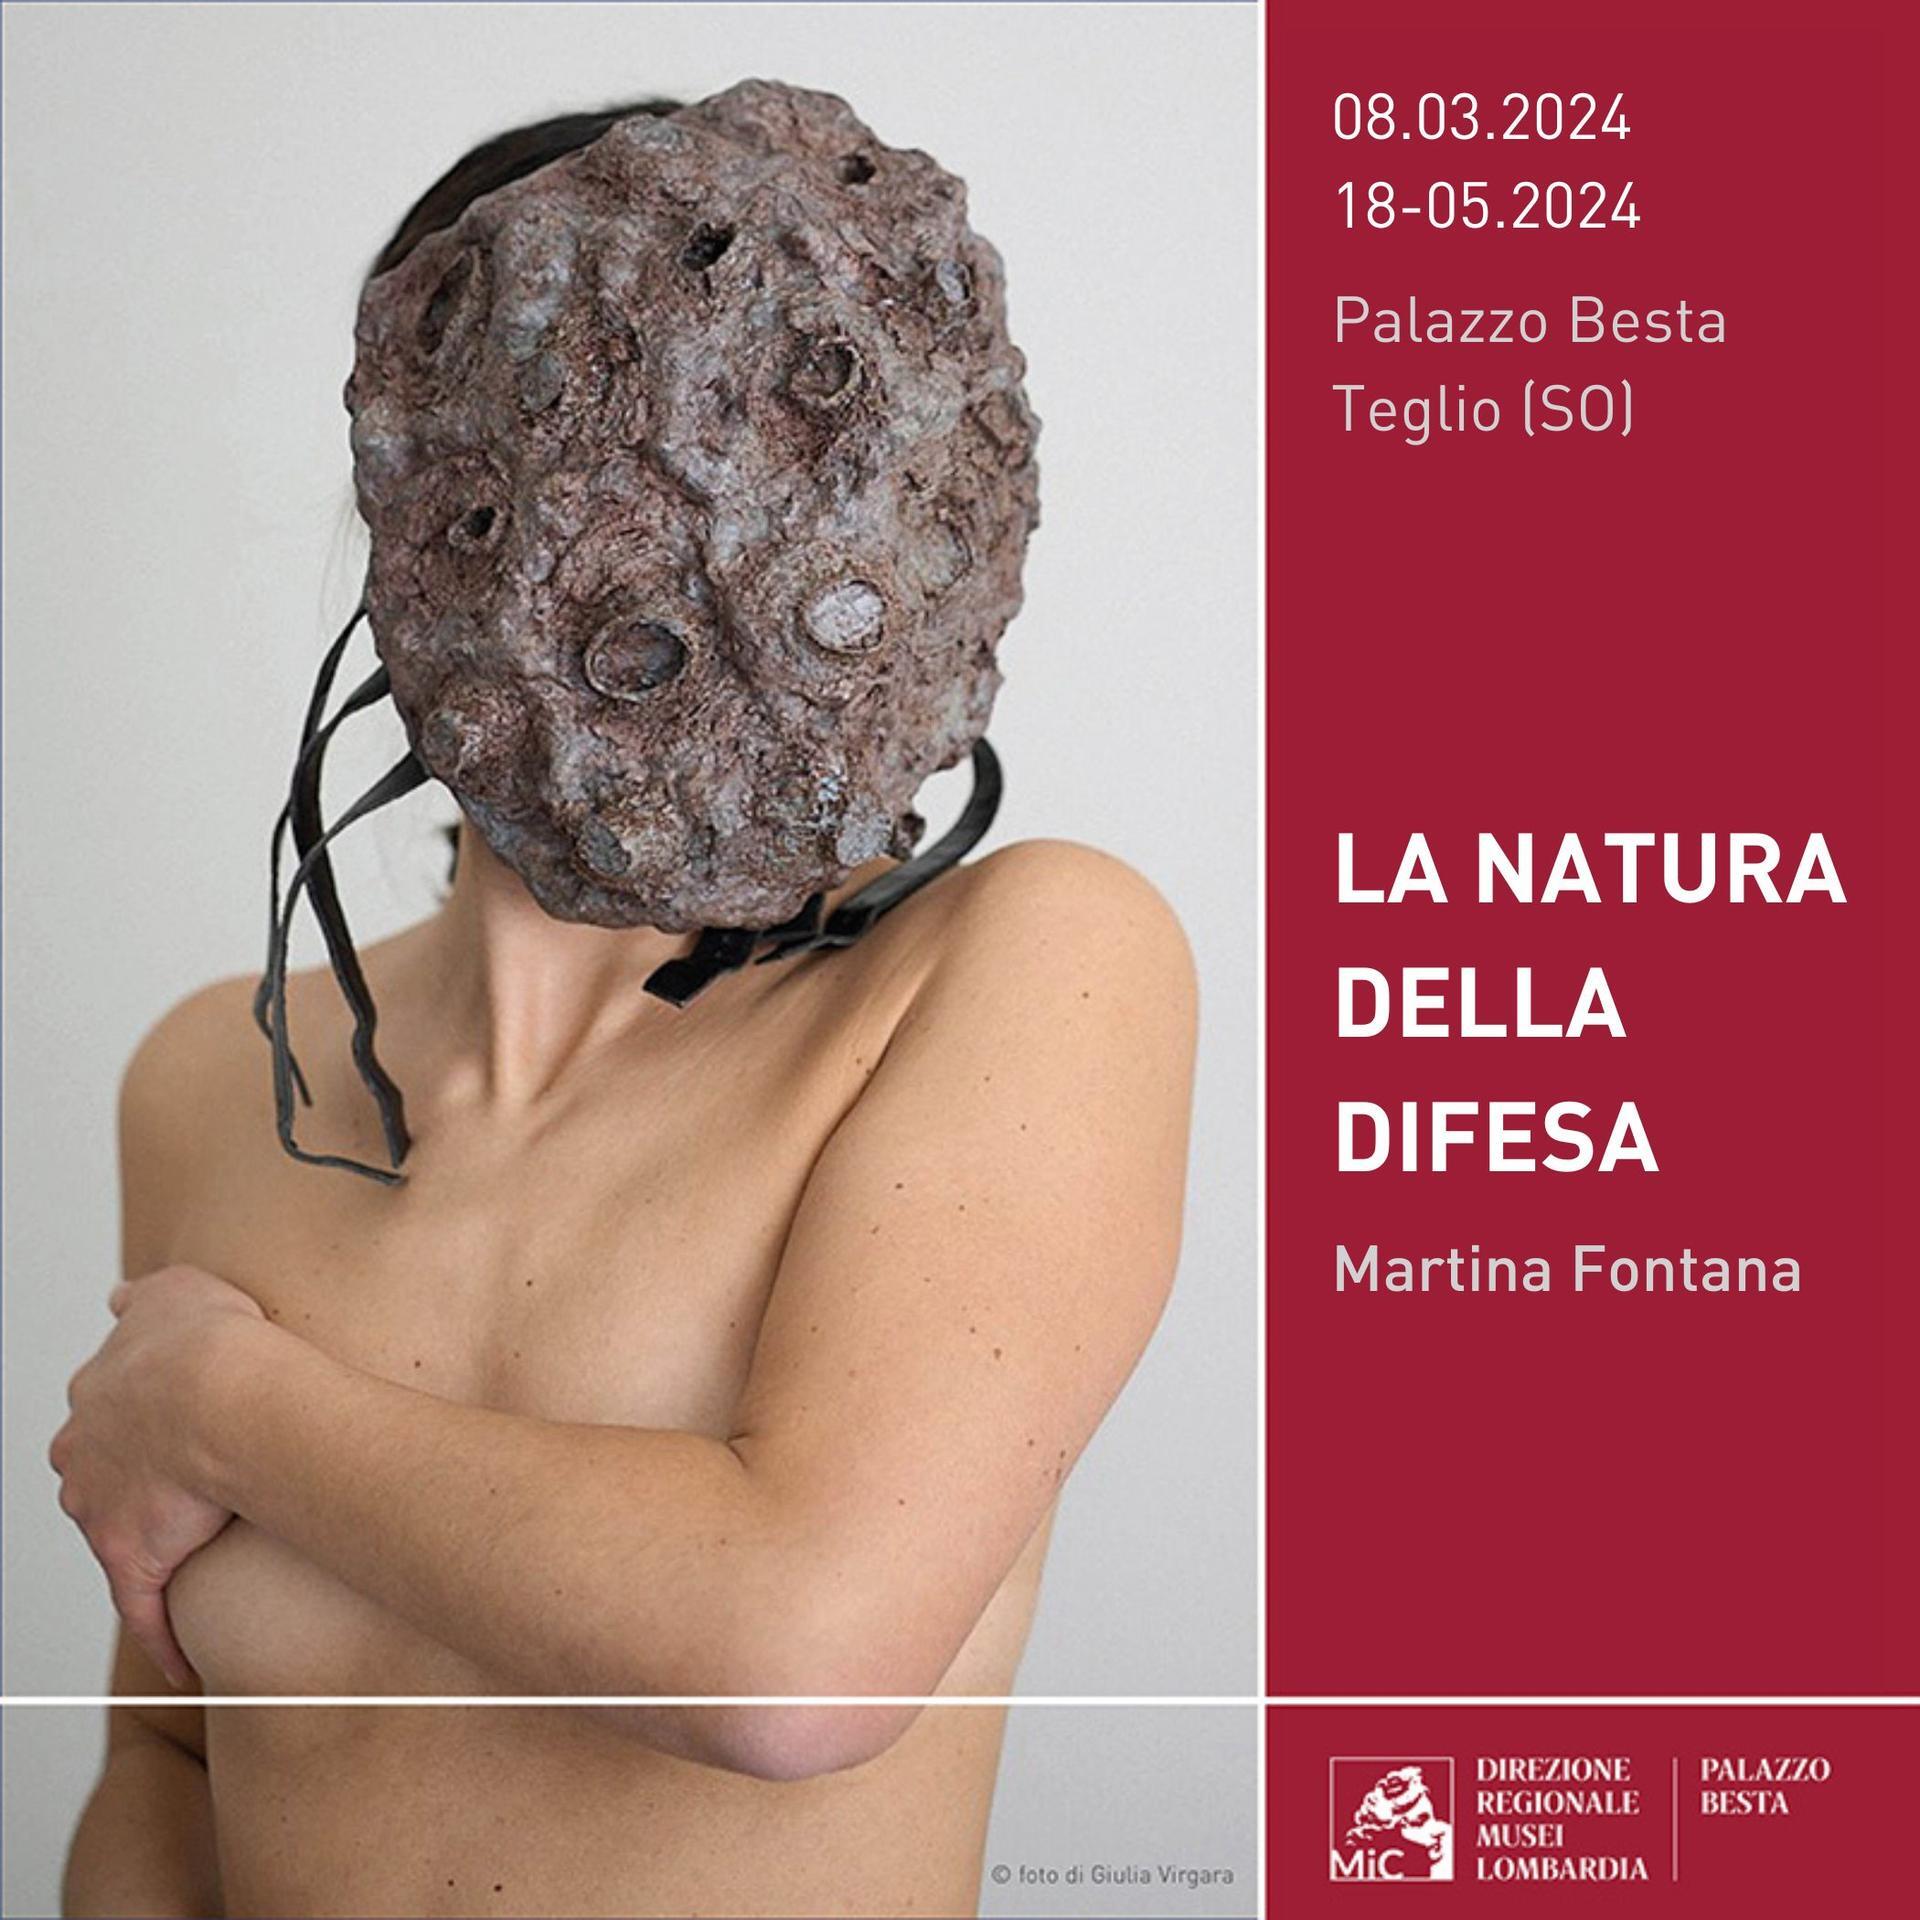 Martina Fontana “La natura della difesa” a Palazzo Besta, a Teglio (So)